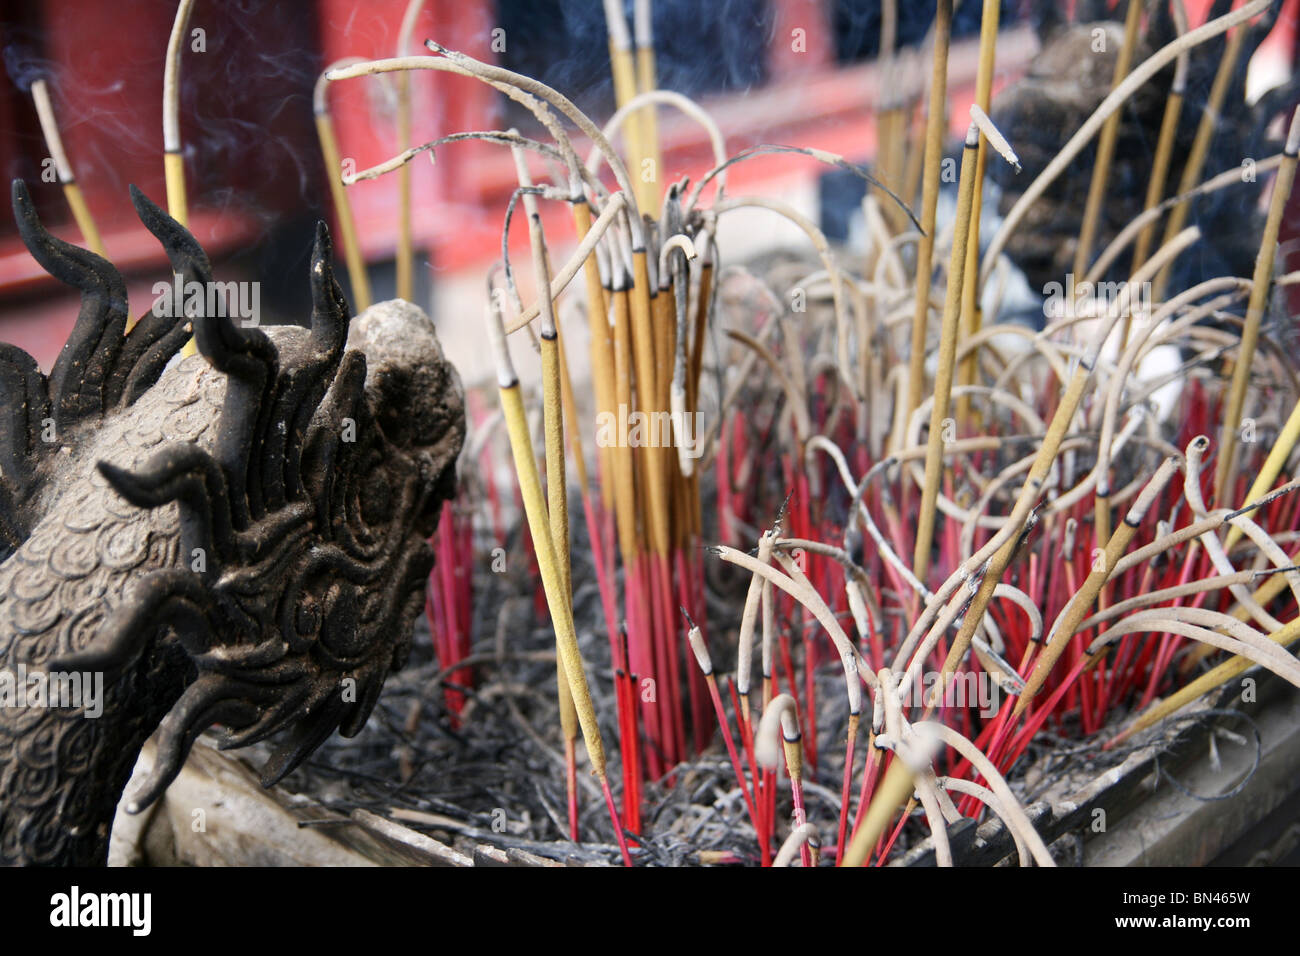 Bruciare incenso nel tempio della letteratura, Hanoi, Vietnam Foto Stock